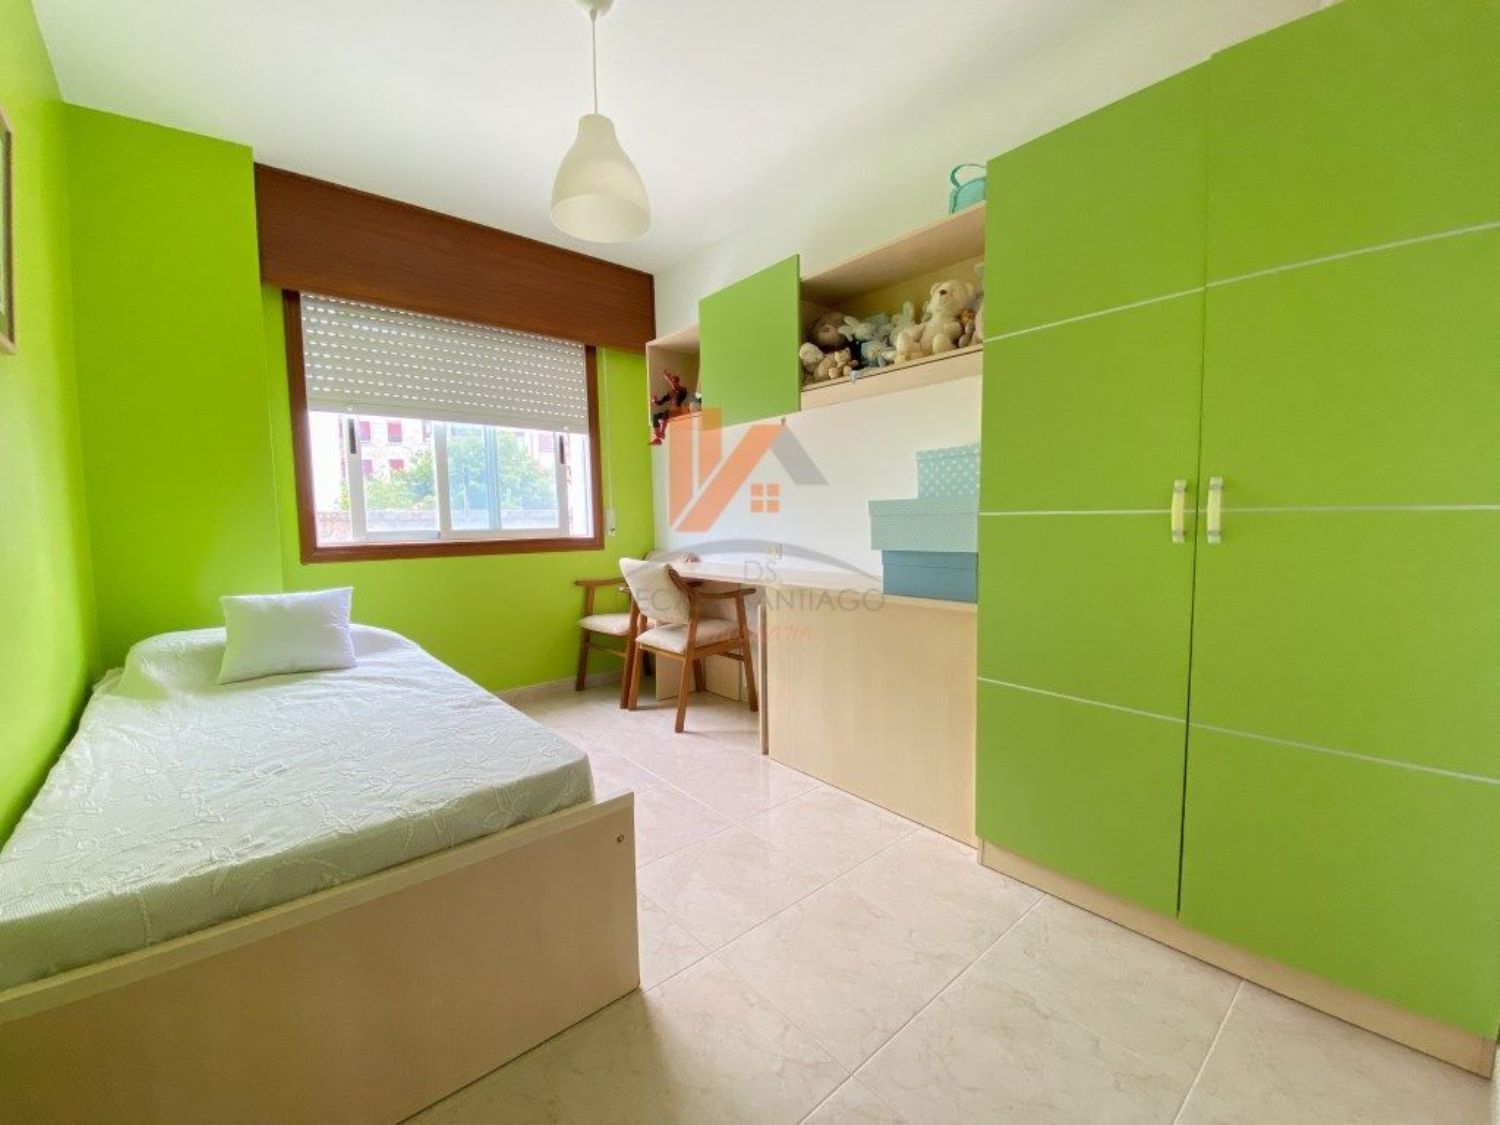 Apartamento en venta en primera línea de mar en Calle Ram,bla en Porto do Son